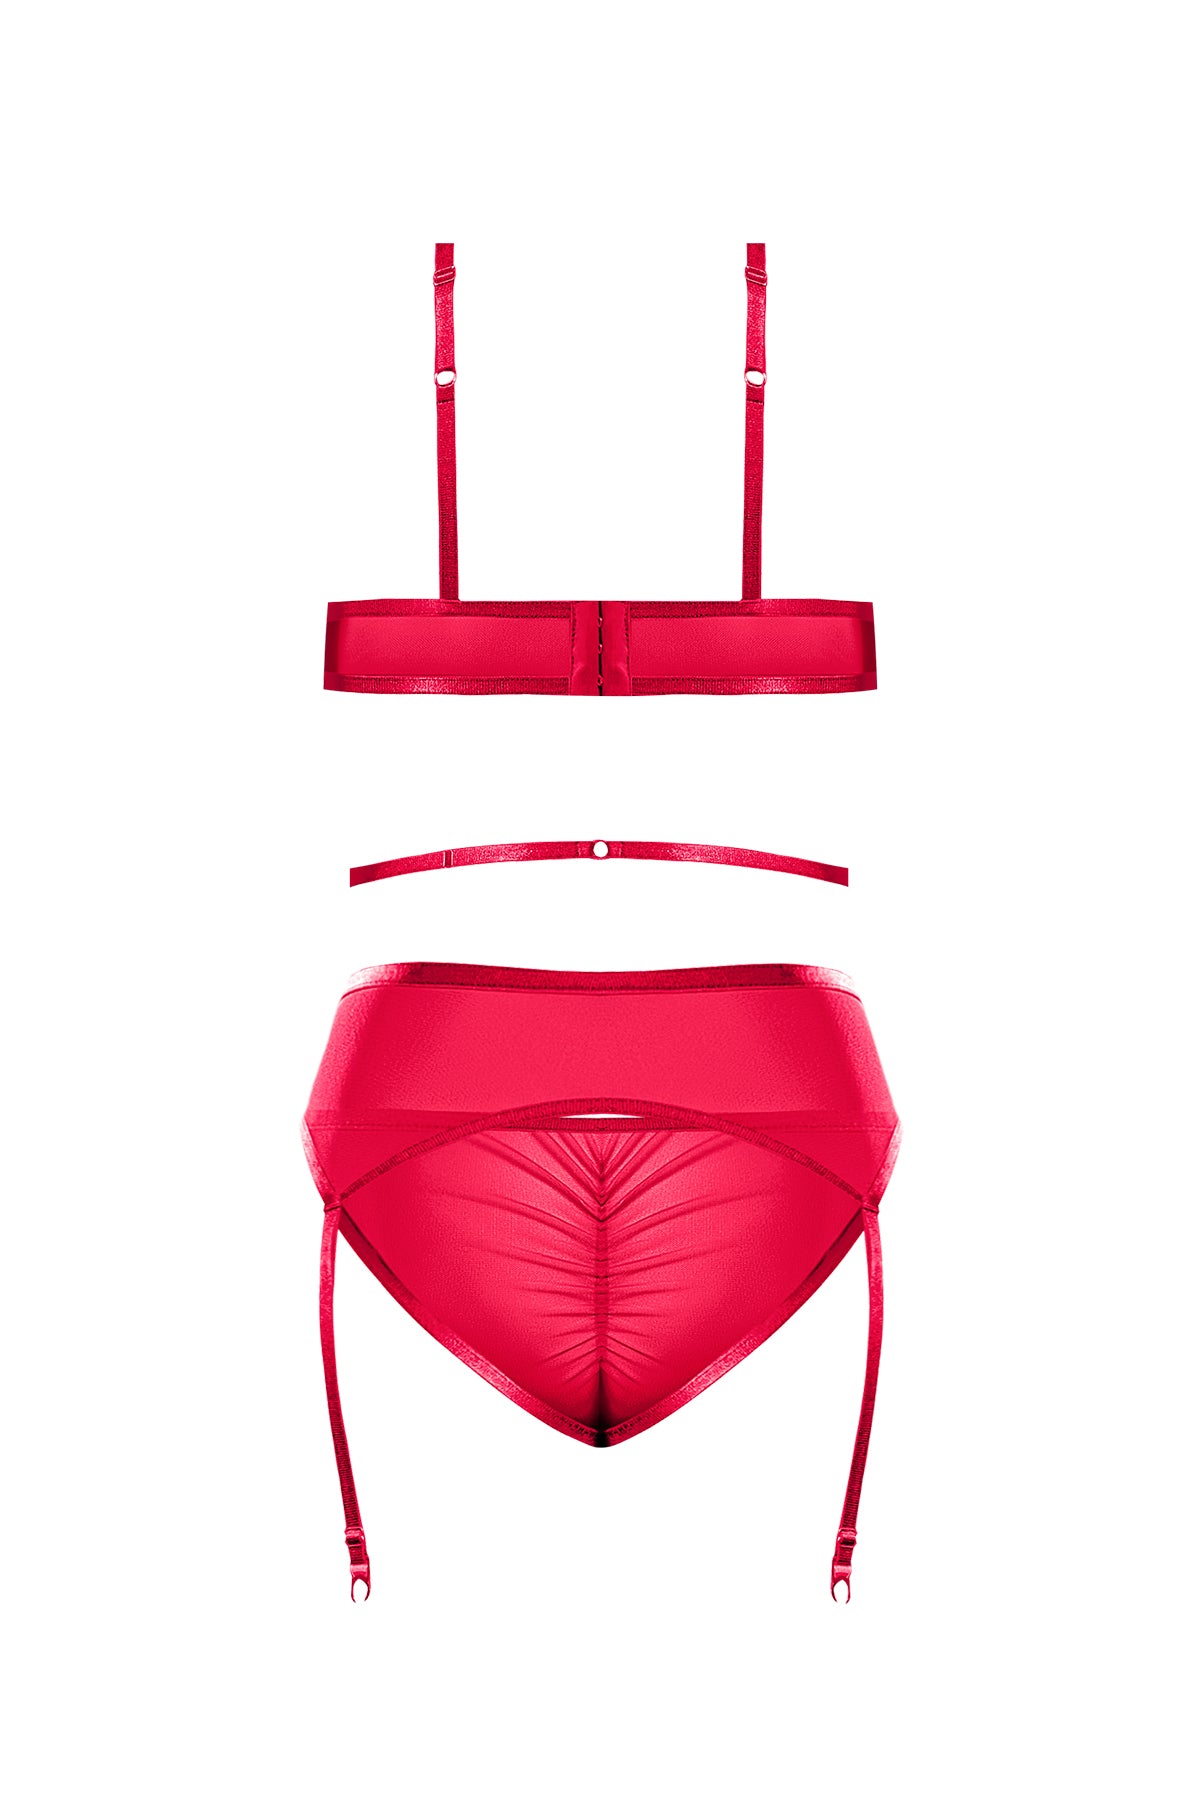 Magic Silk Sheer Mesh Bra Garter Belt & Panty Set Red